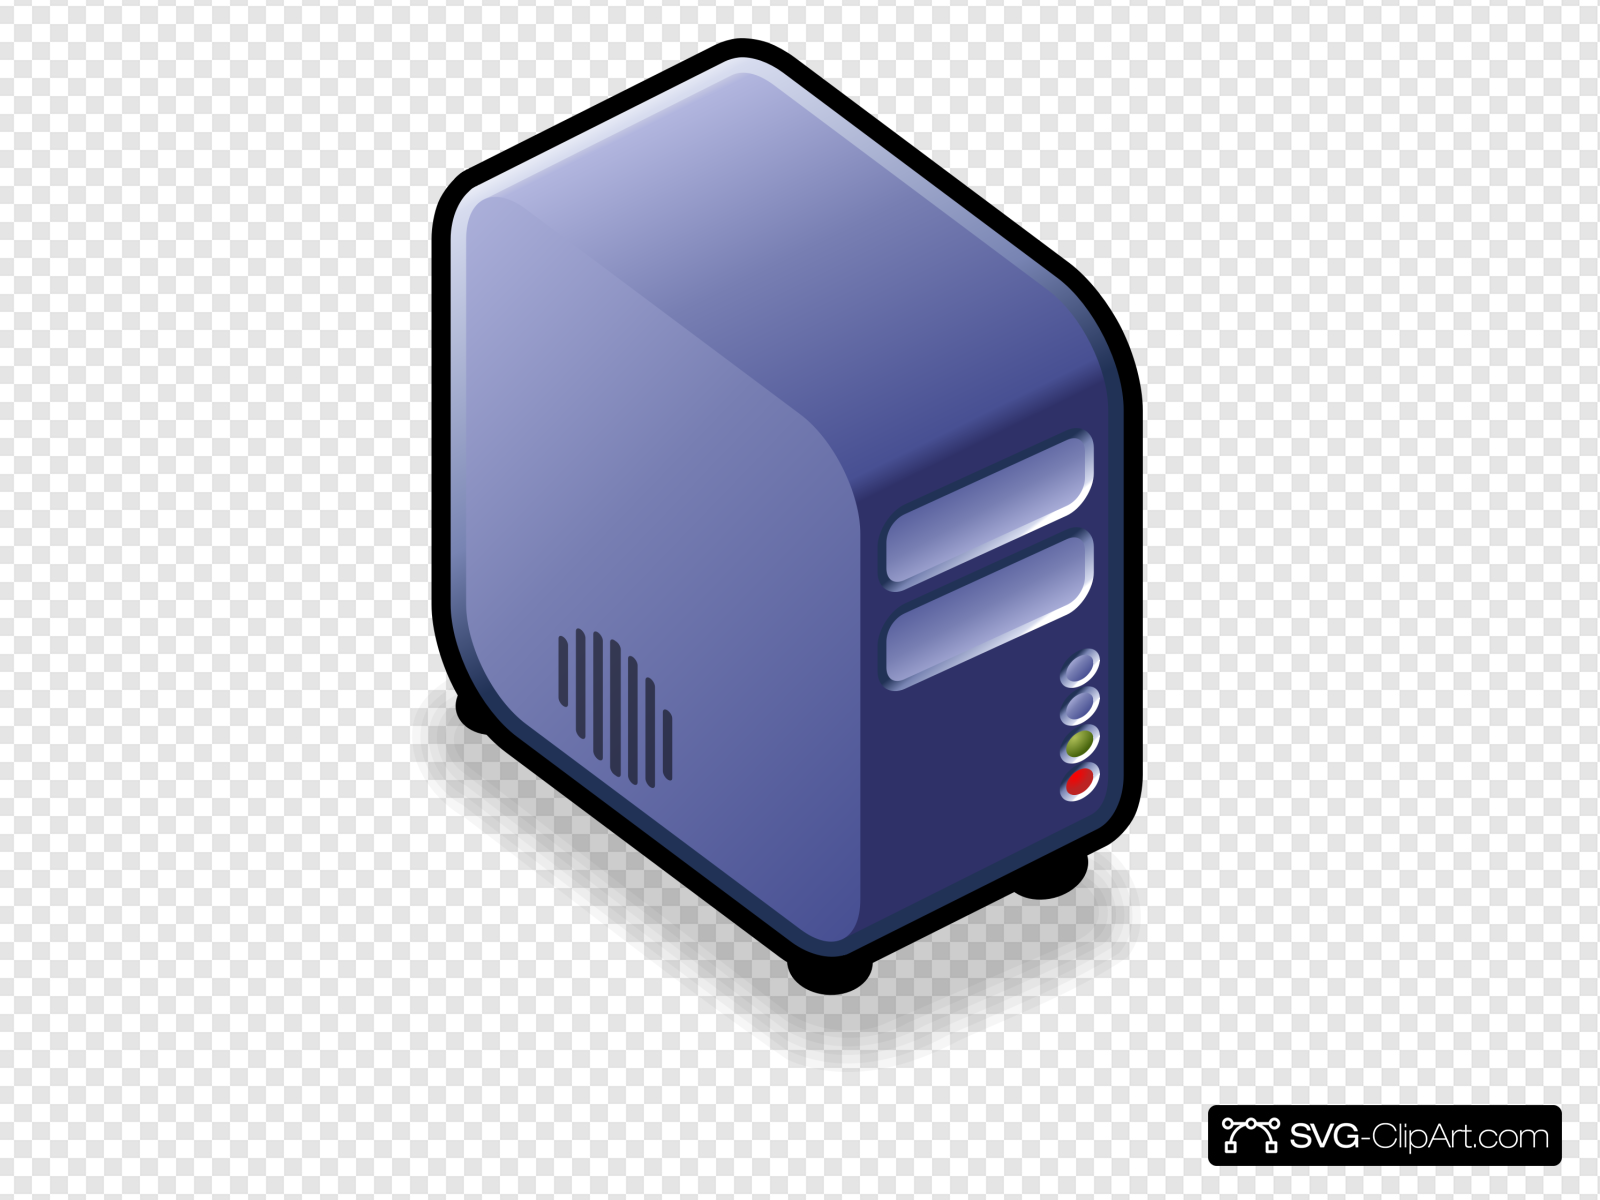 Server Small Case Icon Blue Clip art, Icon and SVG